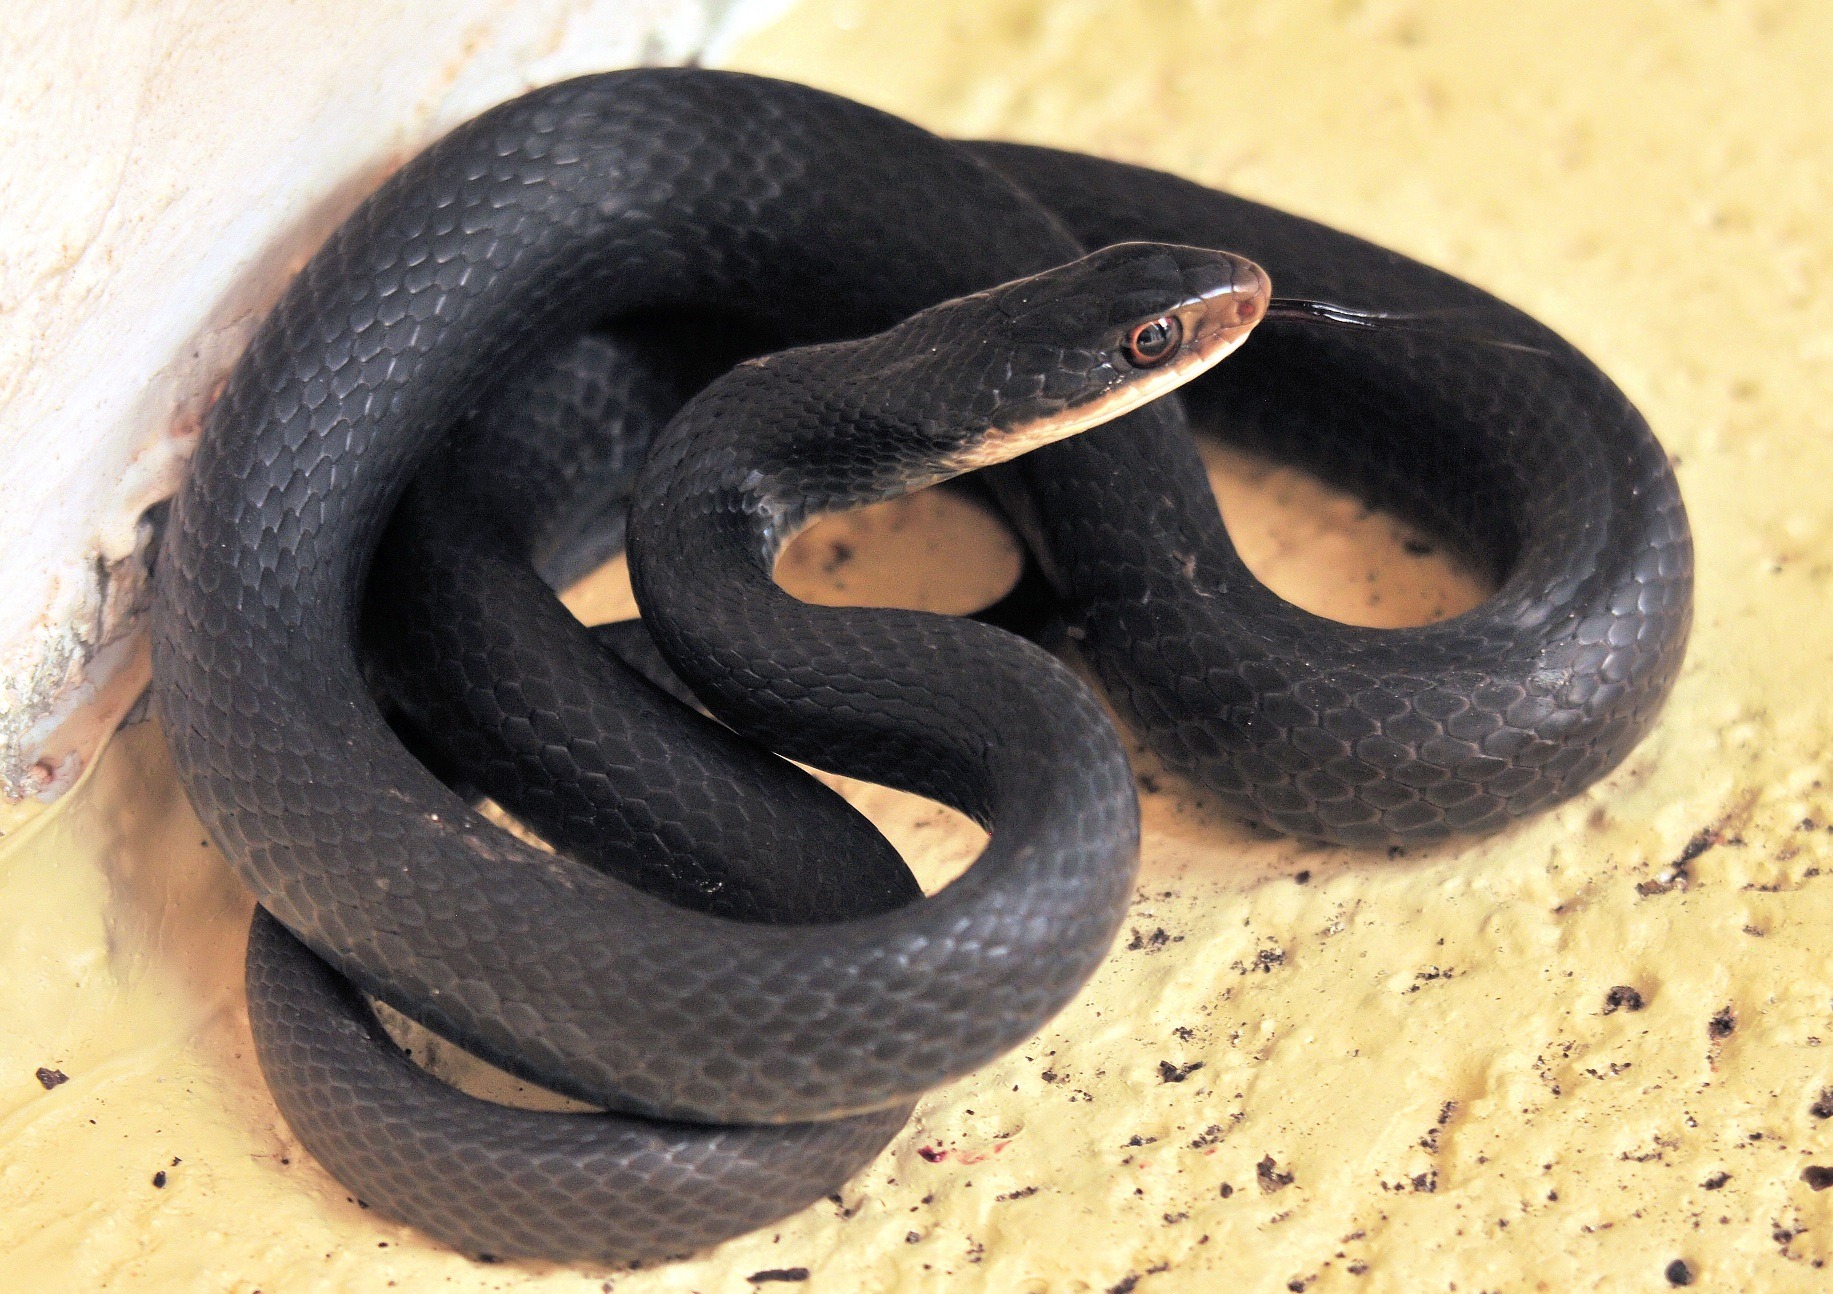 Black Racer snake